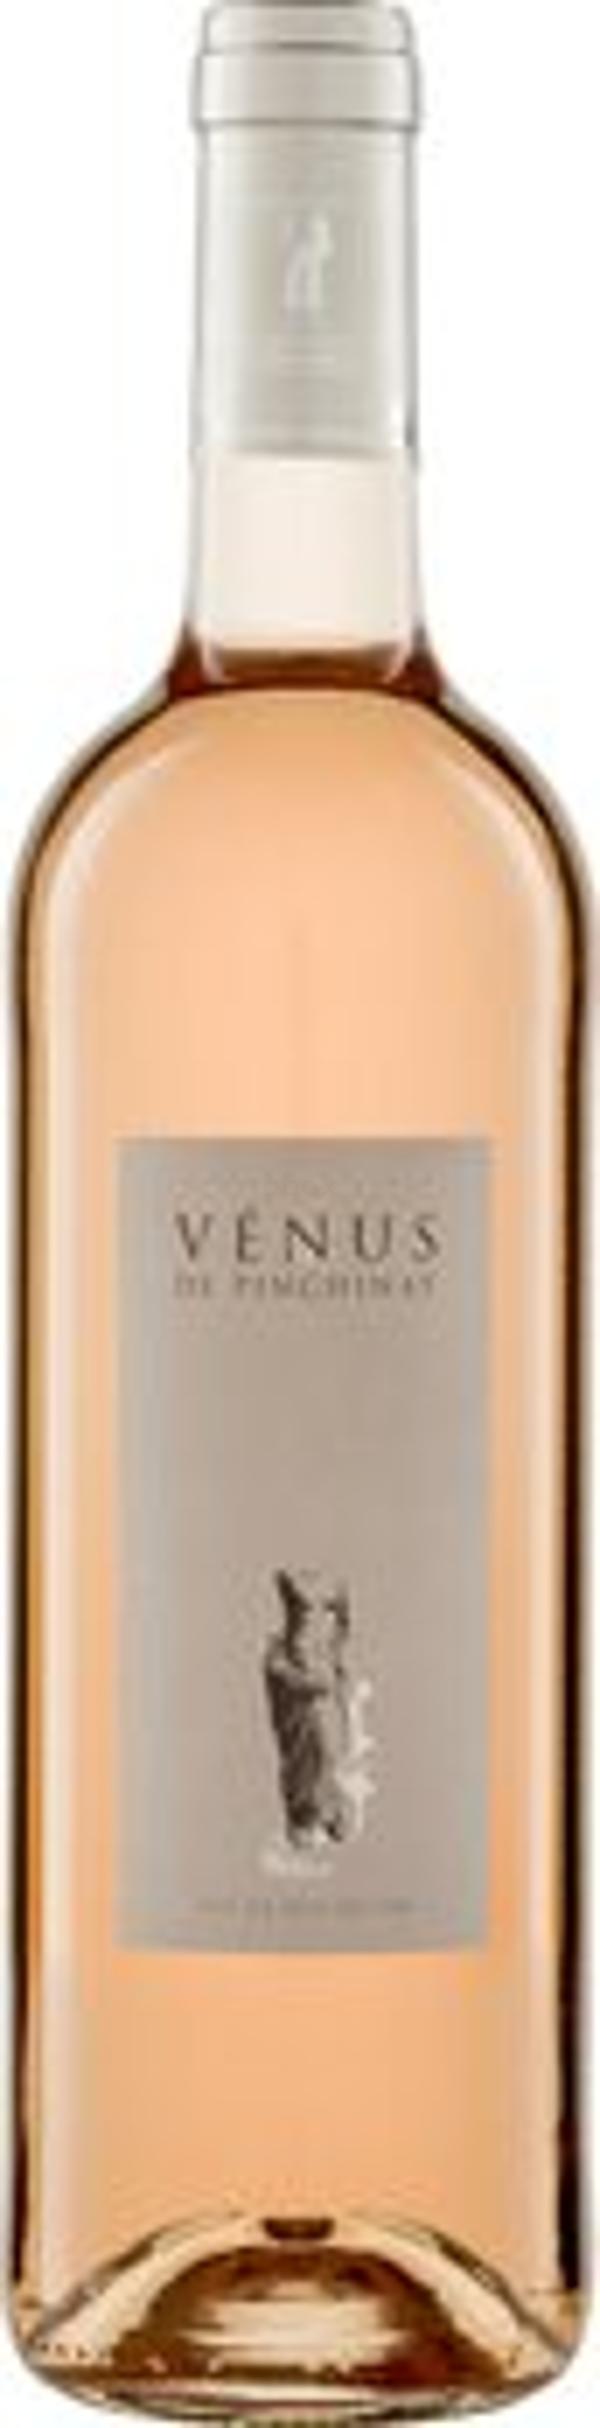 Produktfoto zu Venus Rosé IGP, 0,75 L